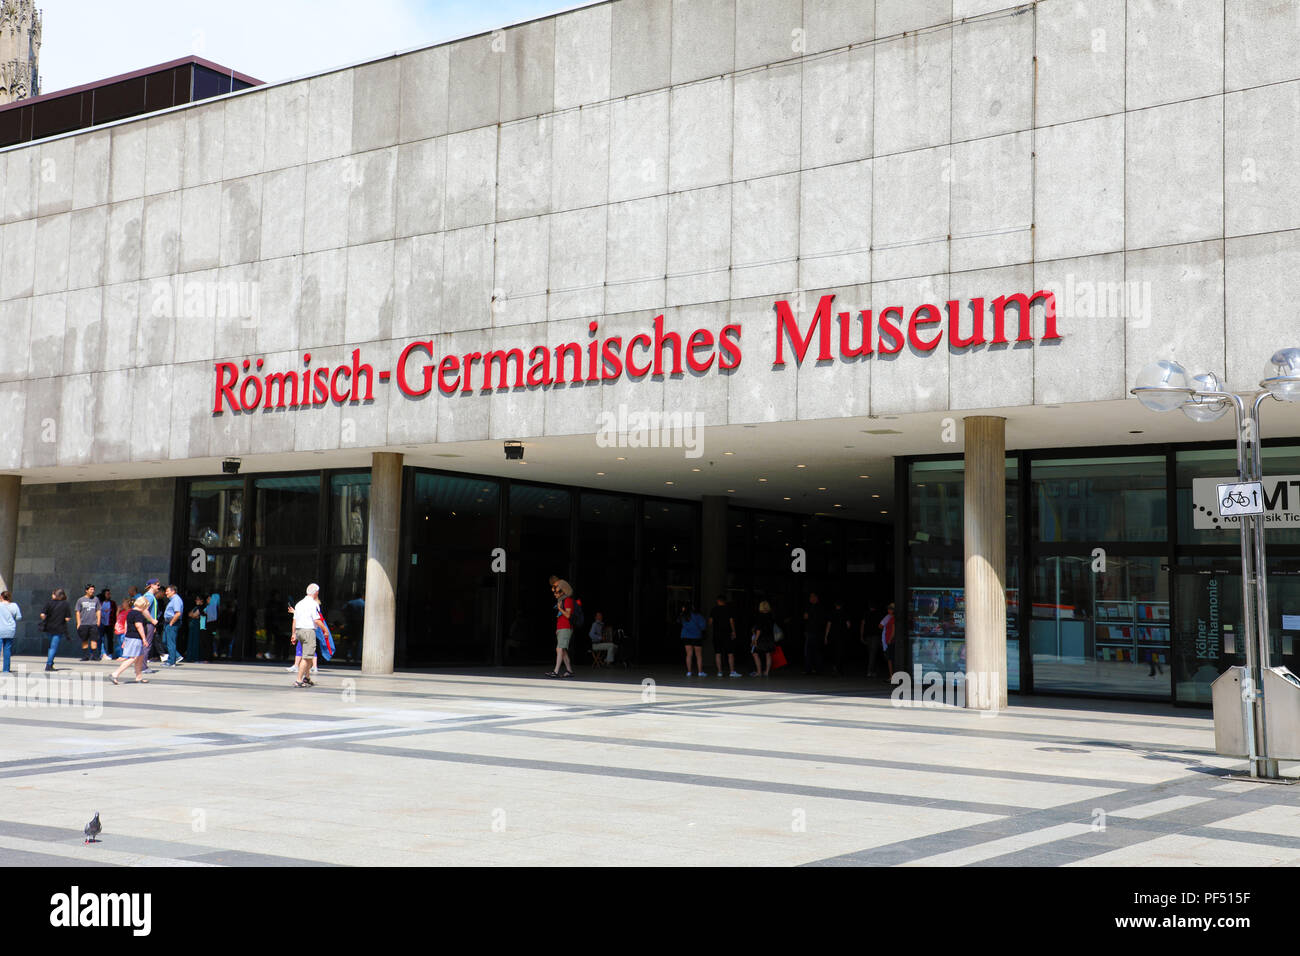 COLOGNE, ALLEMAGNE - 31 MAI 2018 : entrée de musée romain-germanique (Römisch-Germanisches Museum) à Cologne, Allemagne Banque D'Images